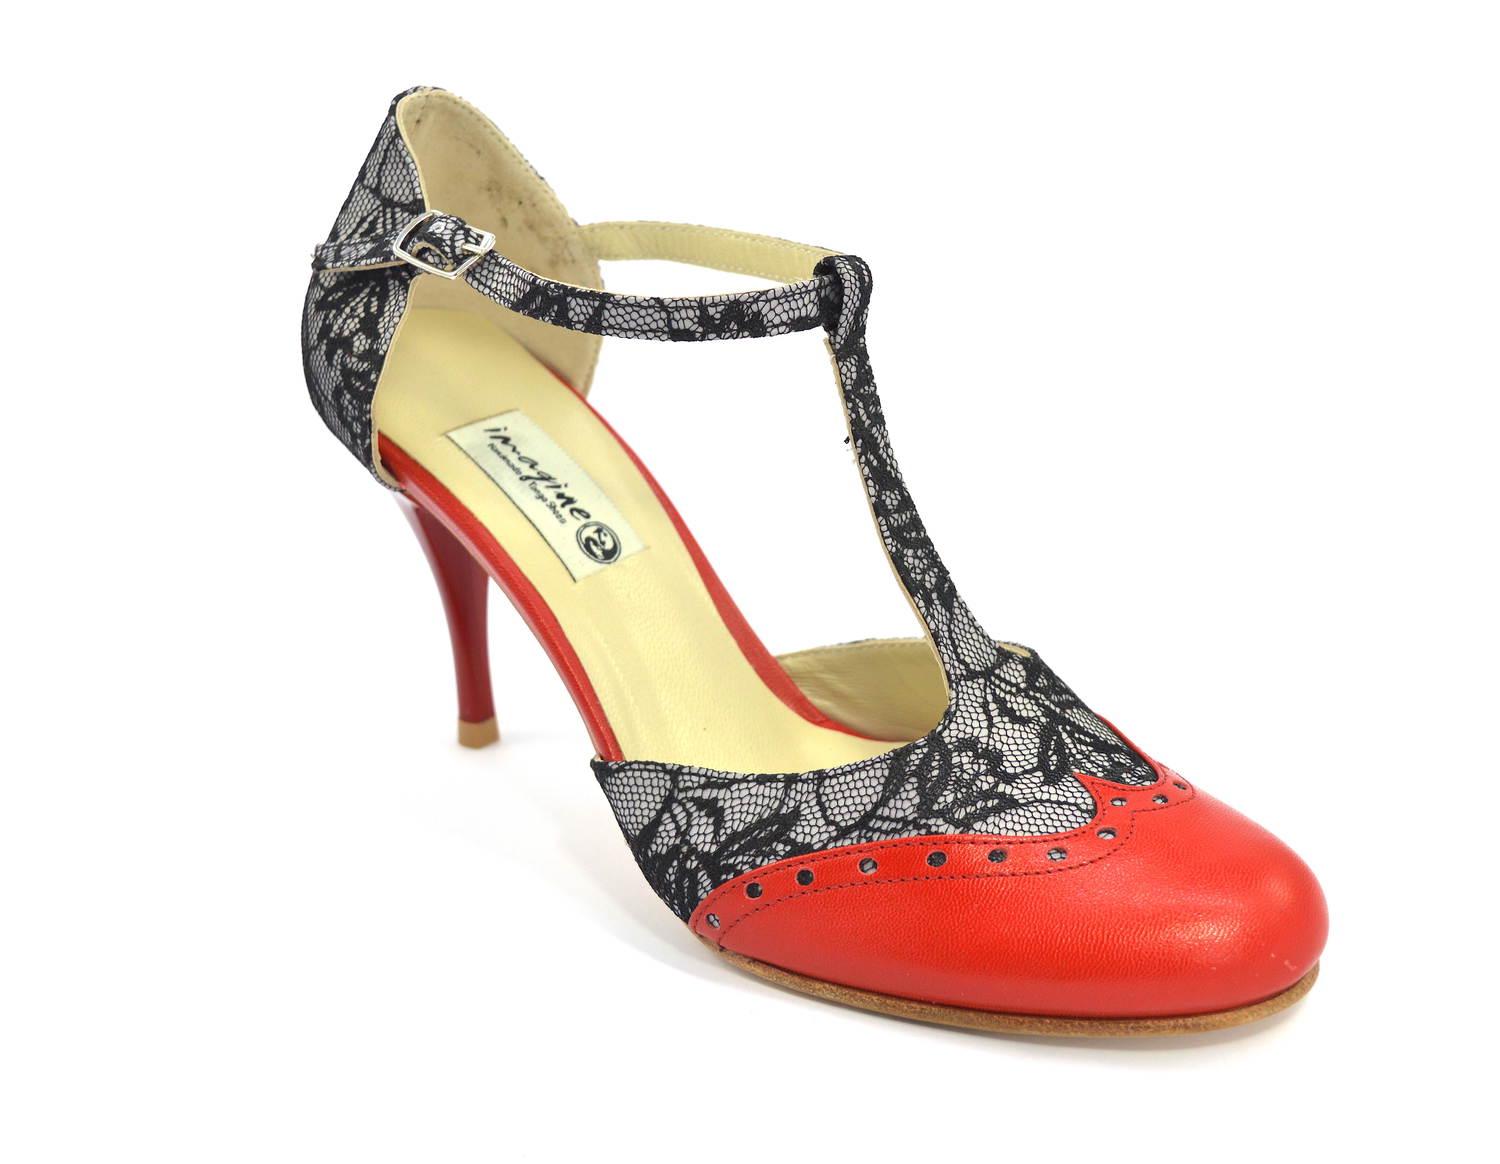 Γυναικείο παπούτσι tango closed toe από μαύρη δαντέλα και κόκκινο δέρμα